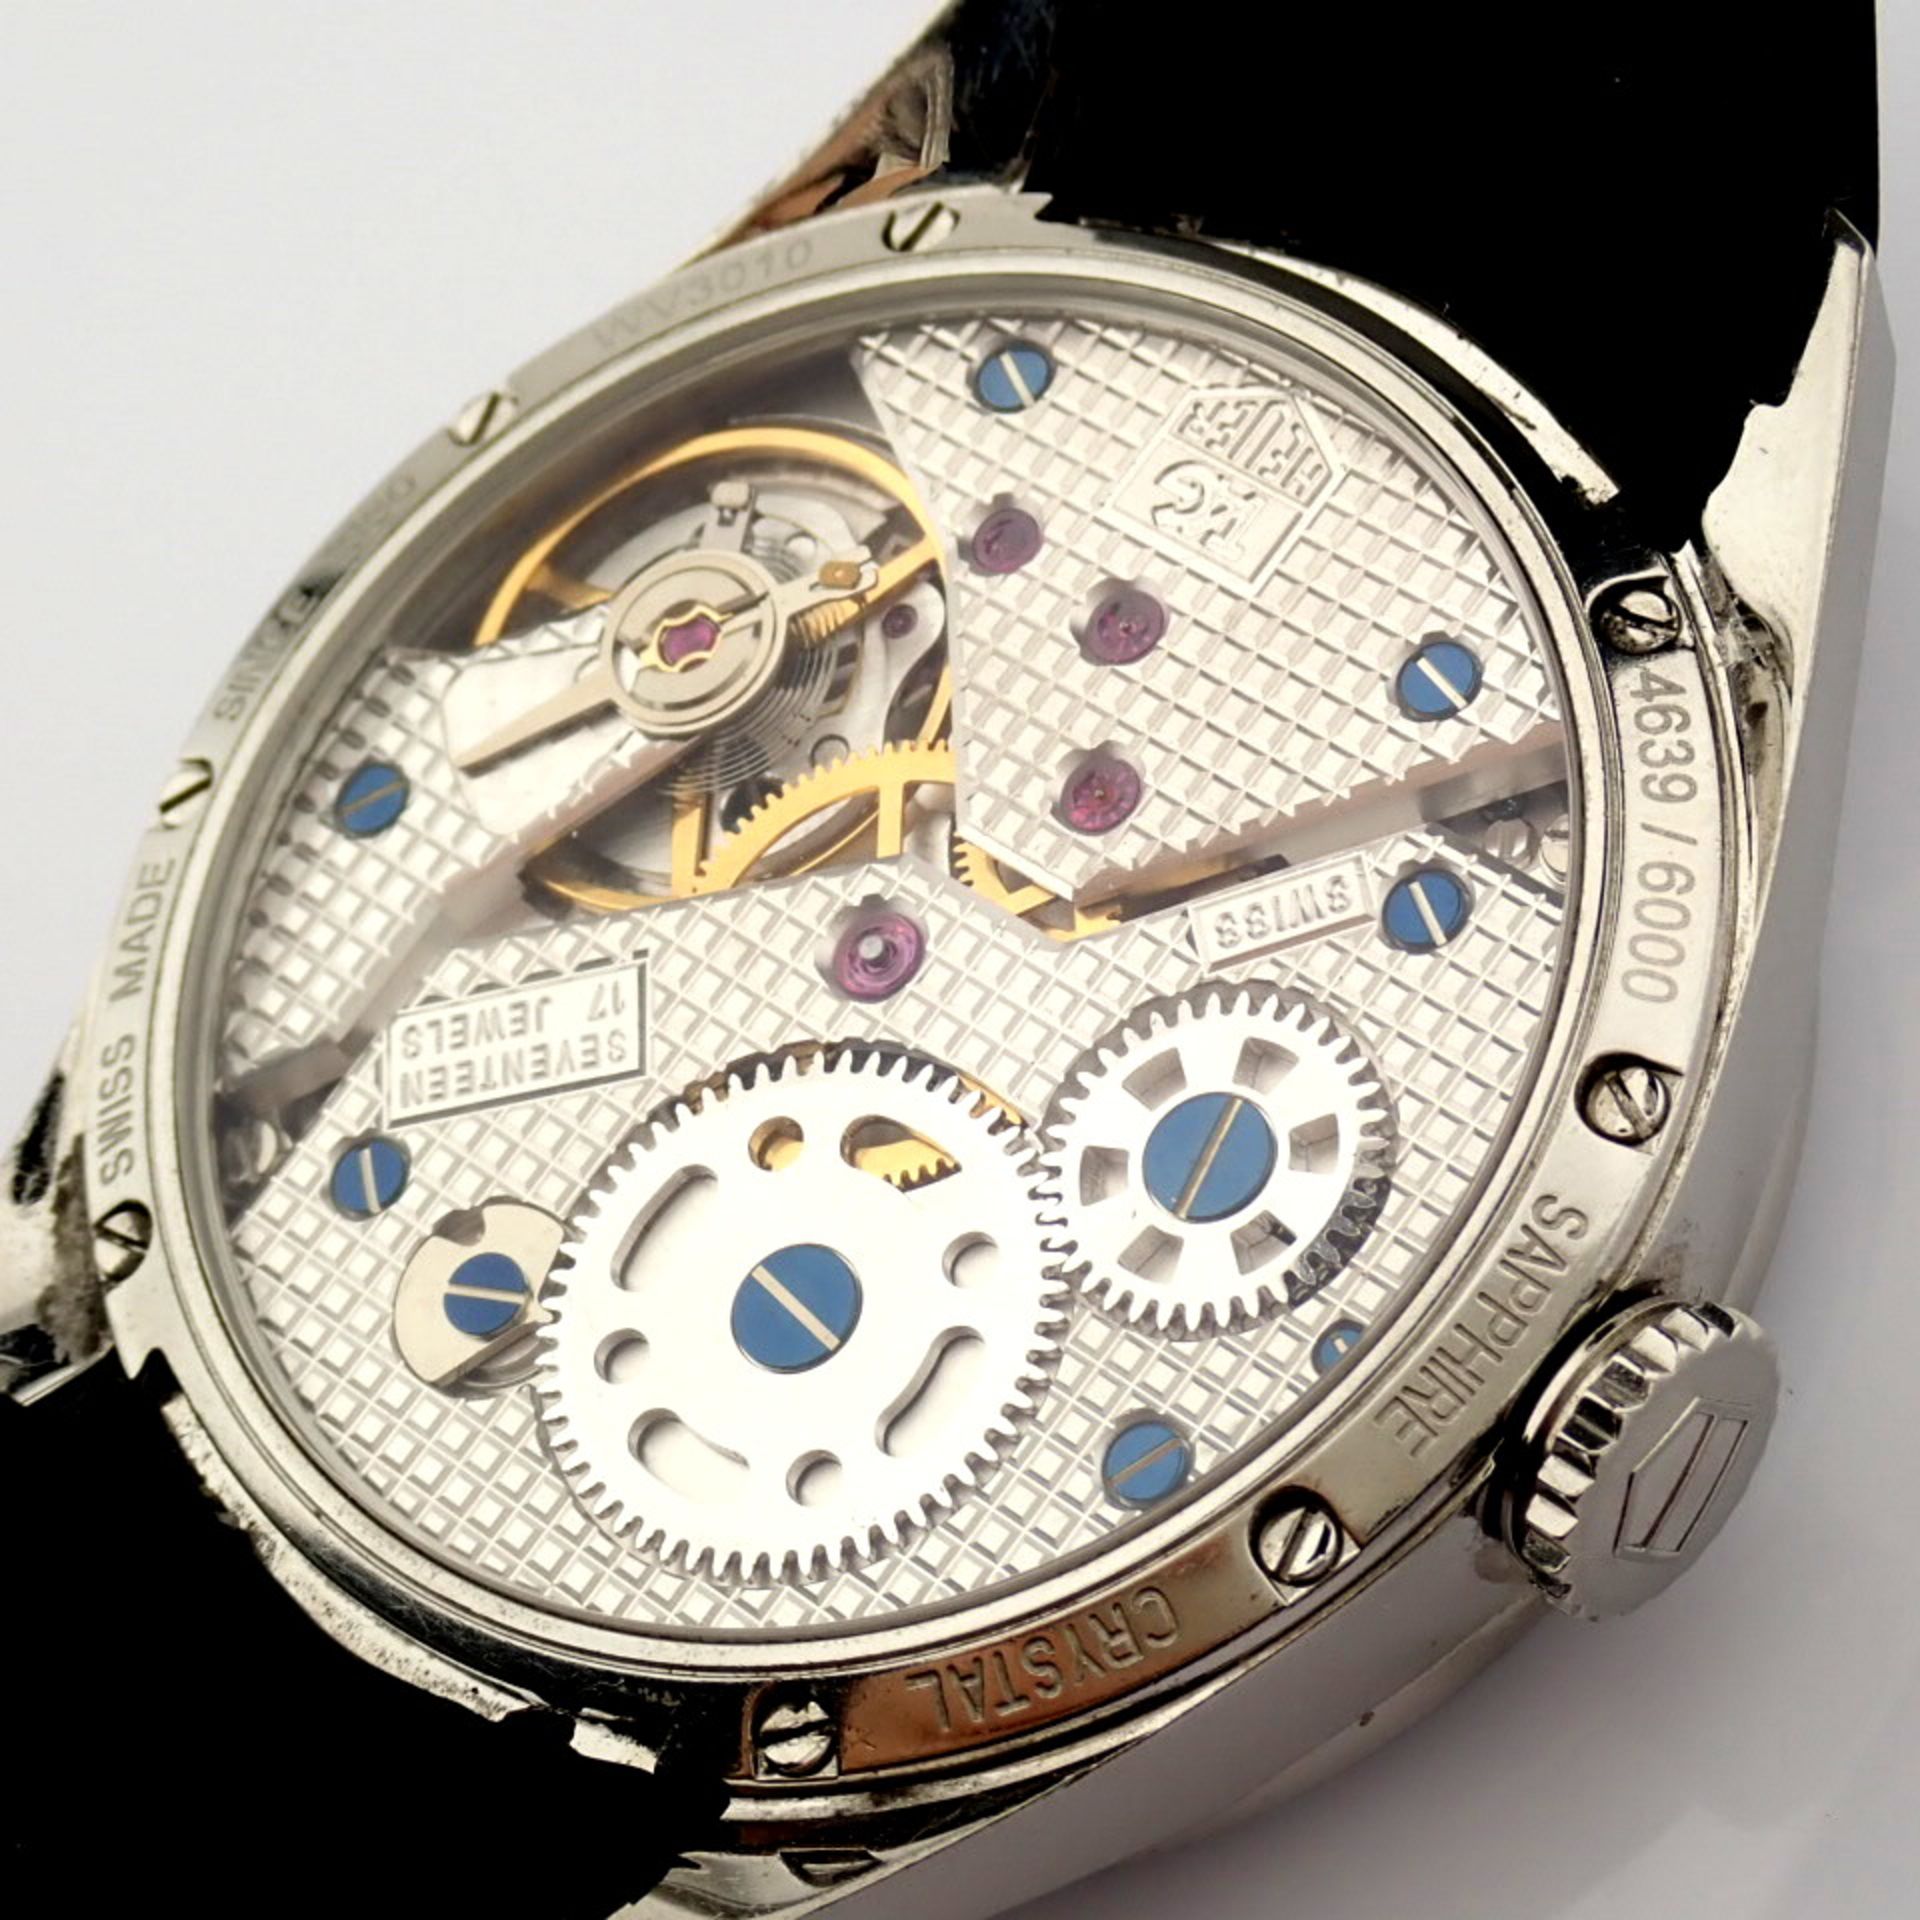 TAG Heuer / Carrera WV3010 Calibre 1 - Gentlmen's Steel Wrist Watch - Image 10 of 11